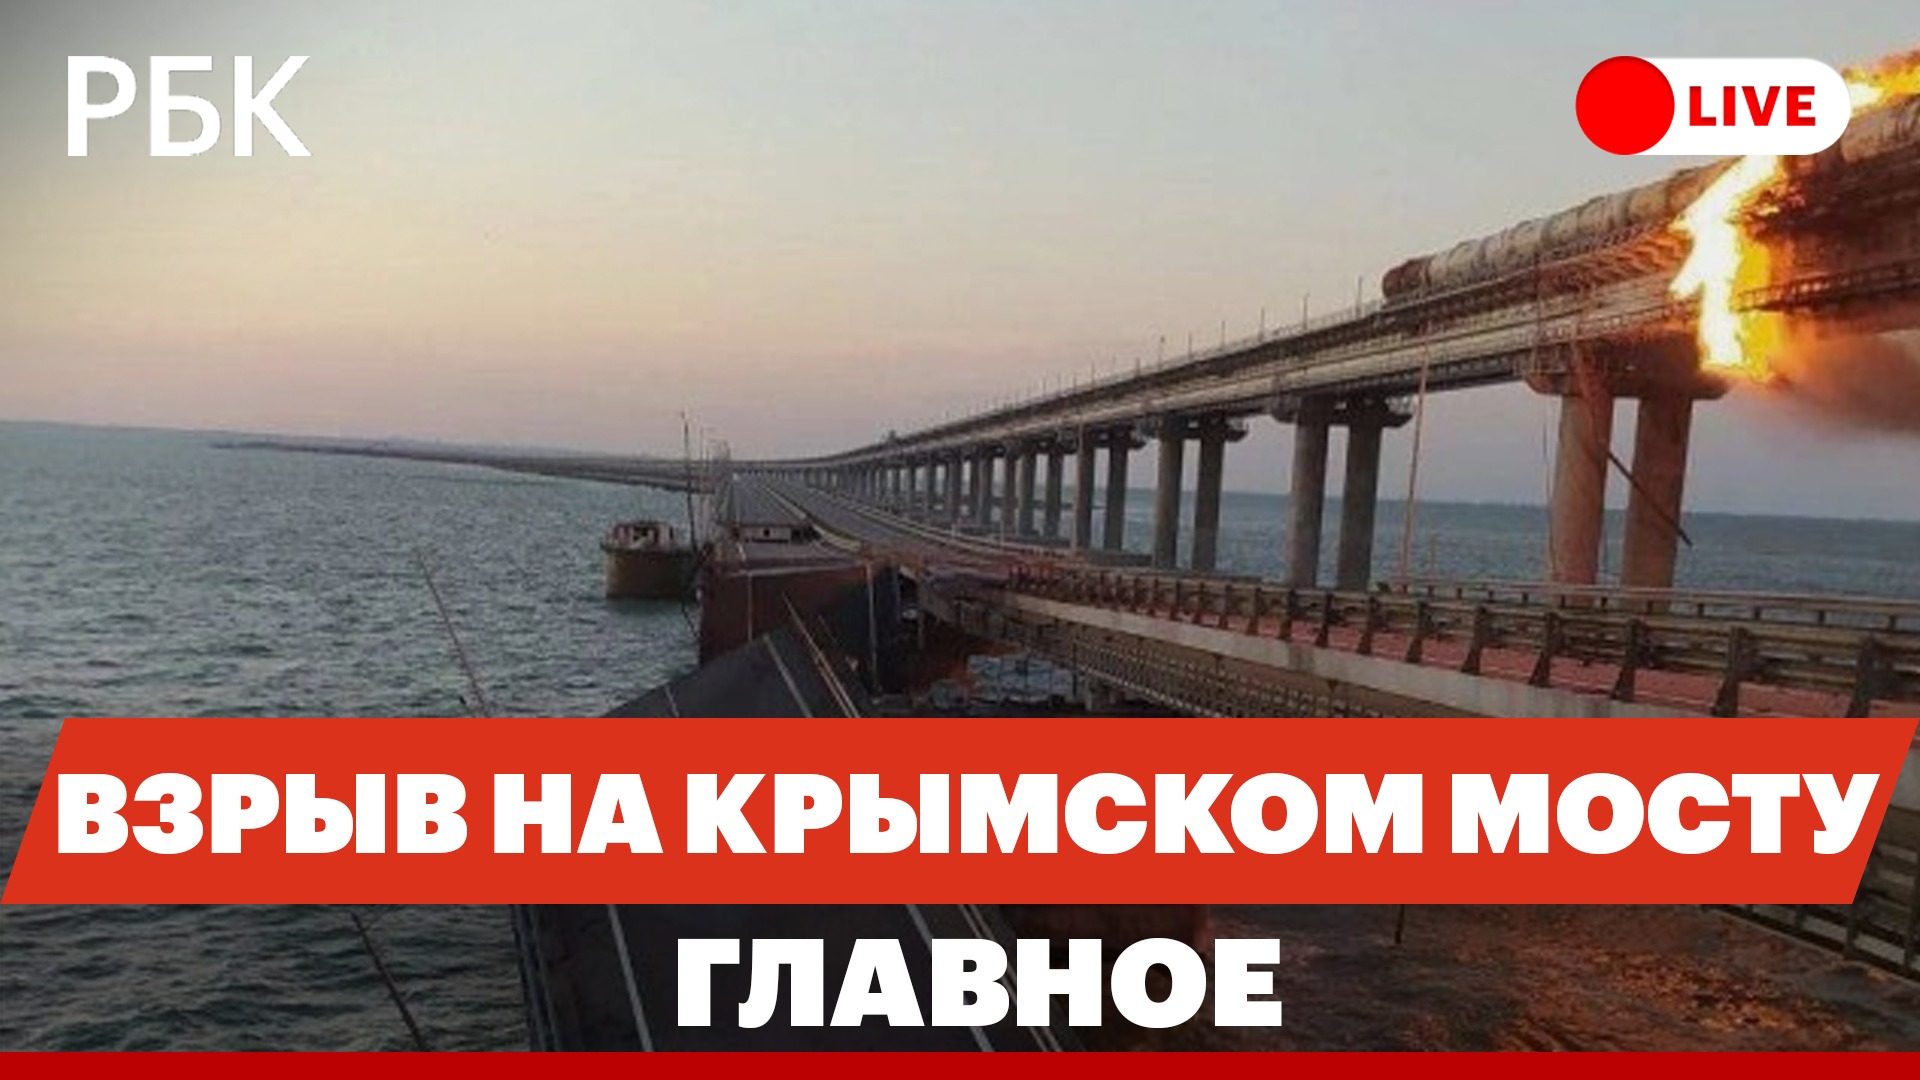 На Крымском мосту подорвали грузовик. Власти готовят паромную переправу. Что известно о ЧП